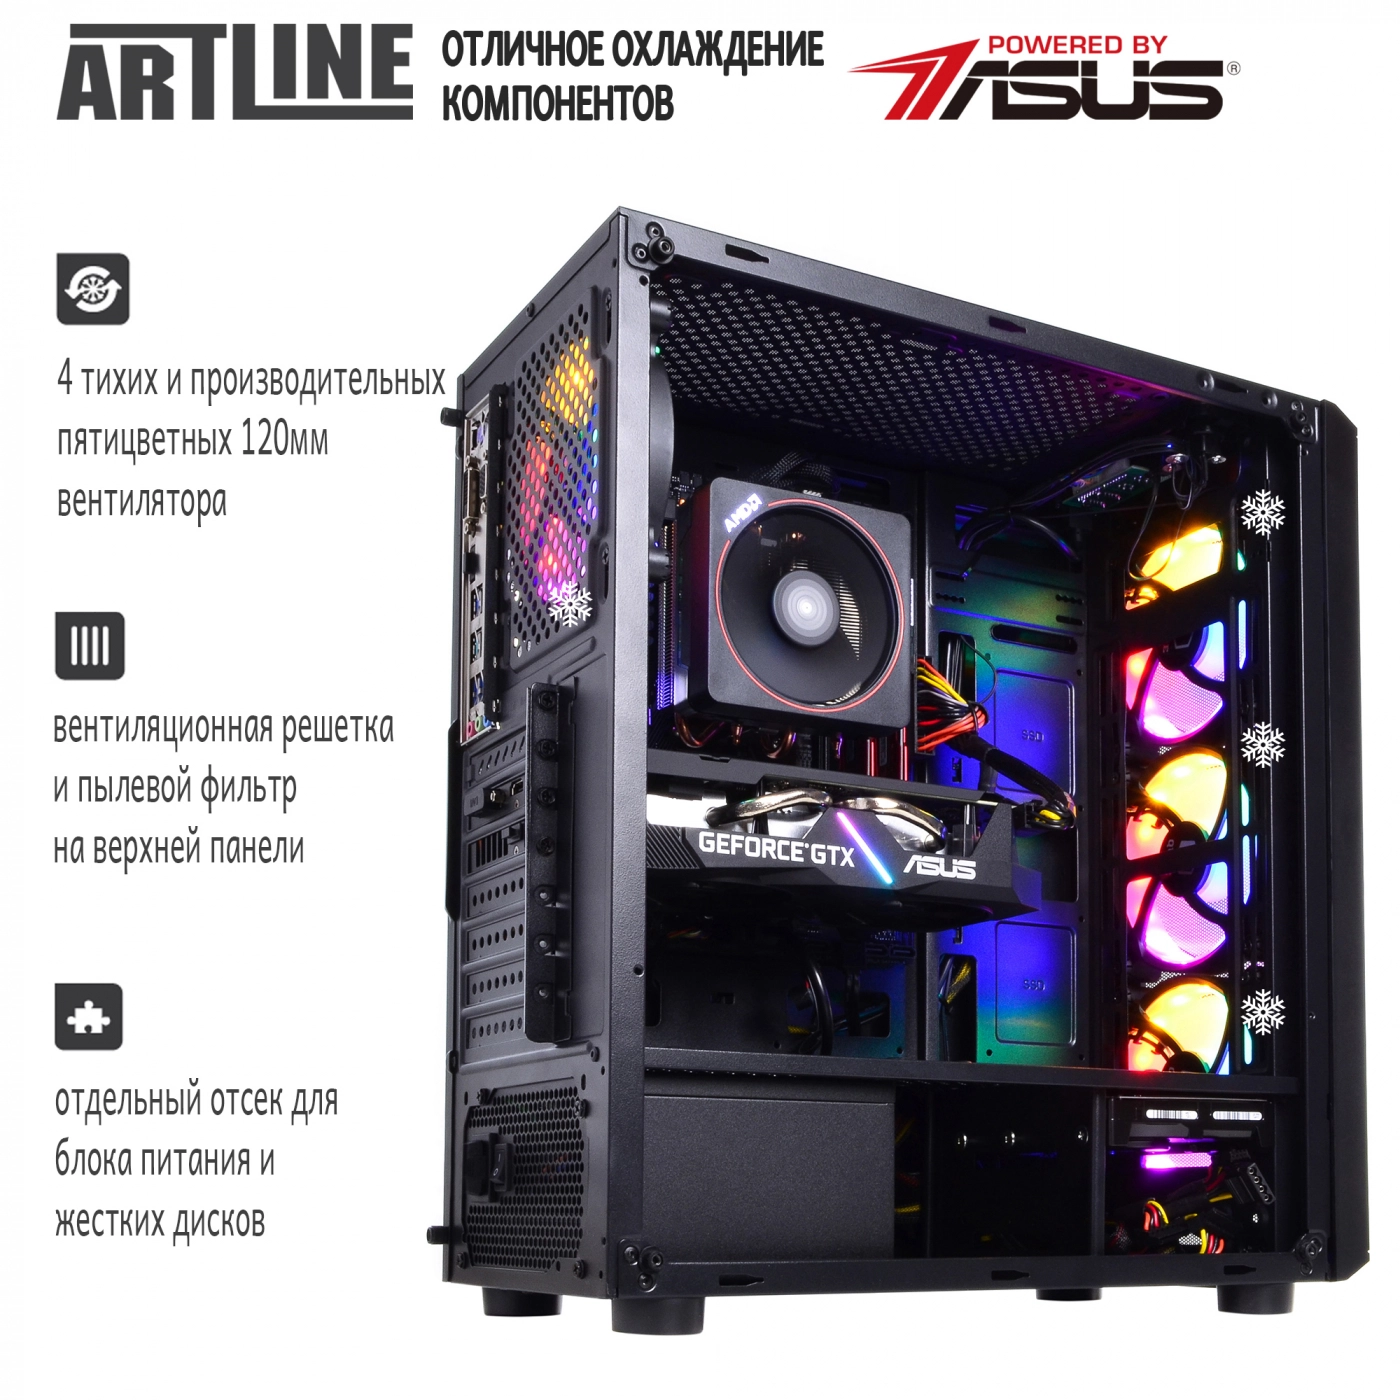 Купить Компьютер ARTLINE Gaming X69v03 - фото 5